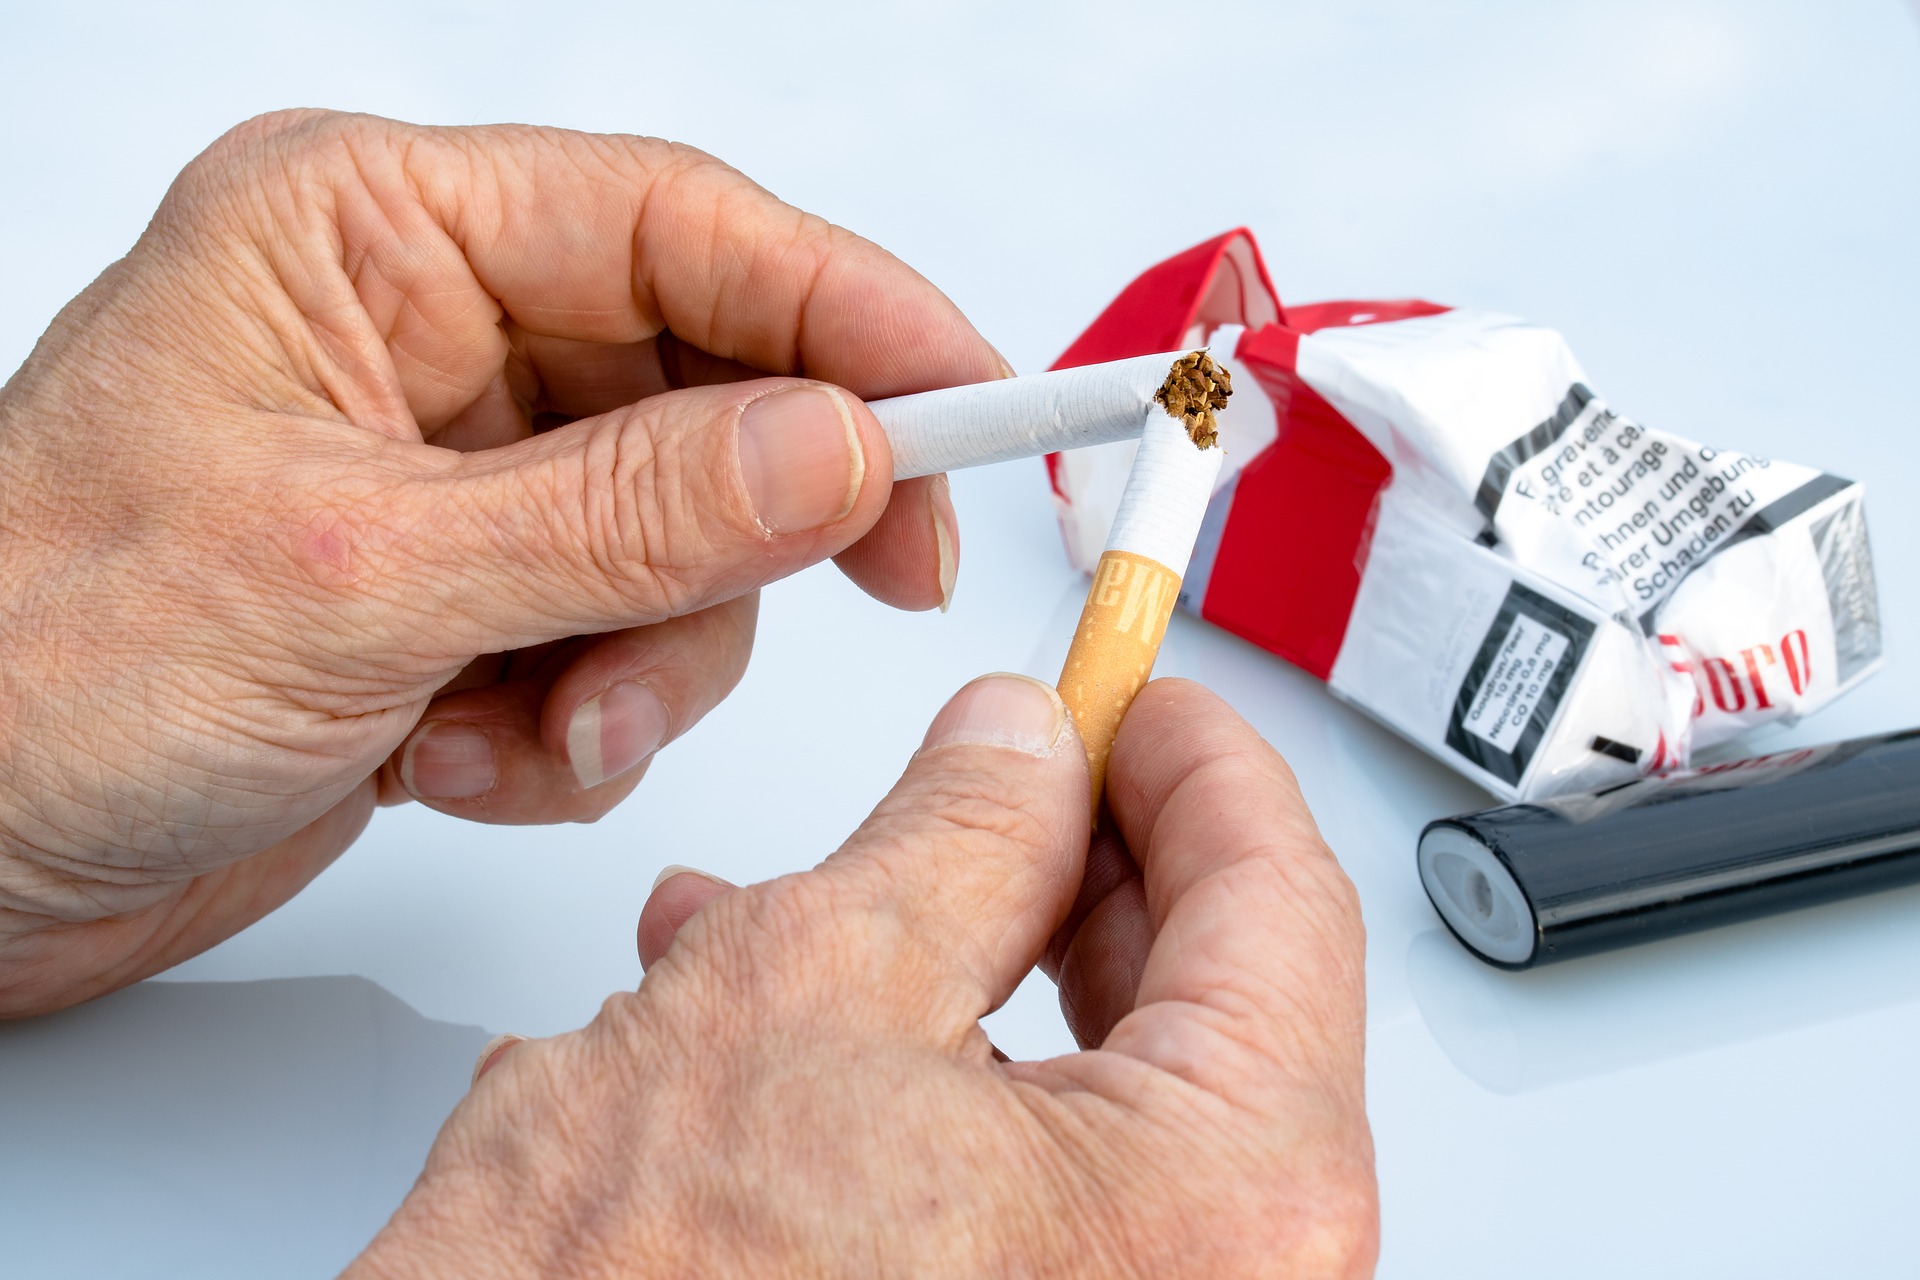 Tobaksfakta: ”Låt inte tobaksindustrin styra svensk hälsopolitik”